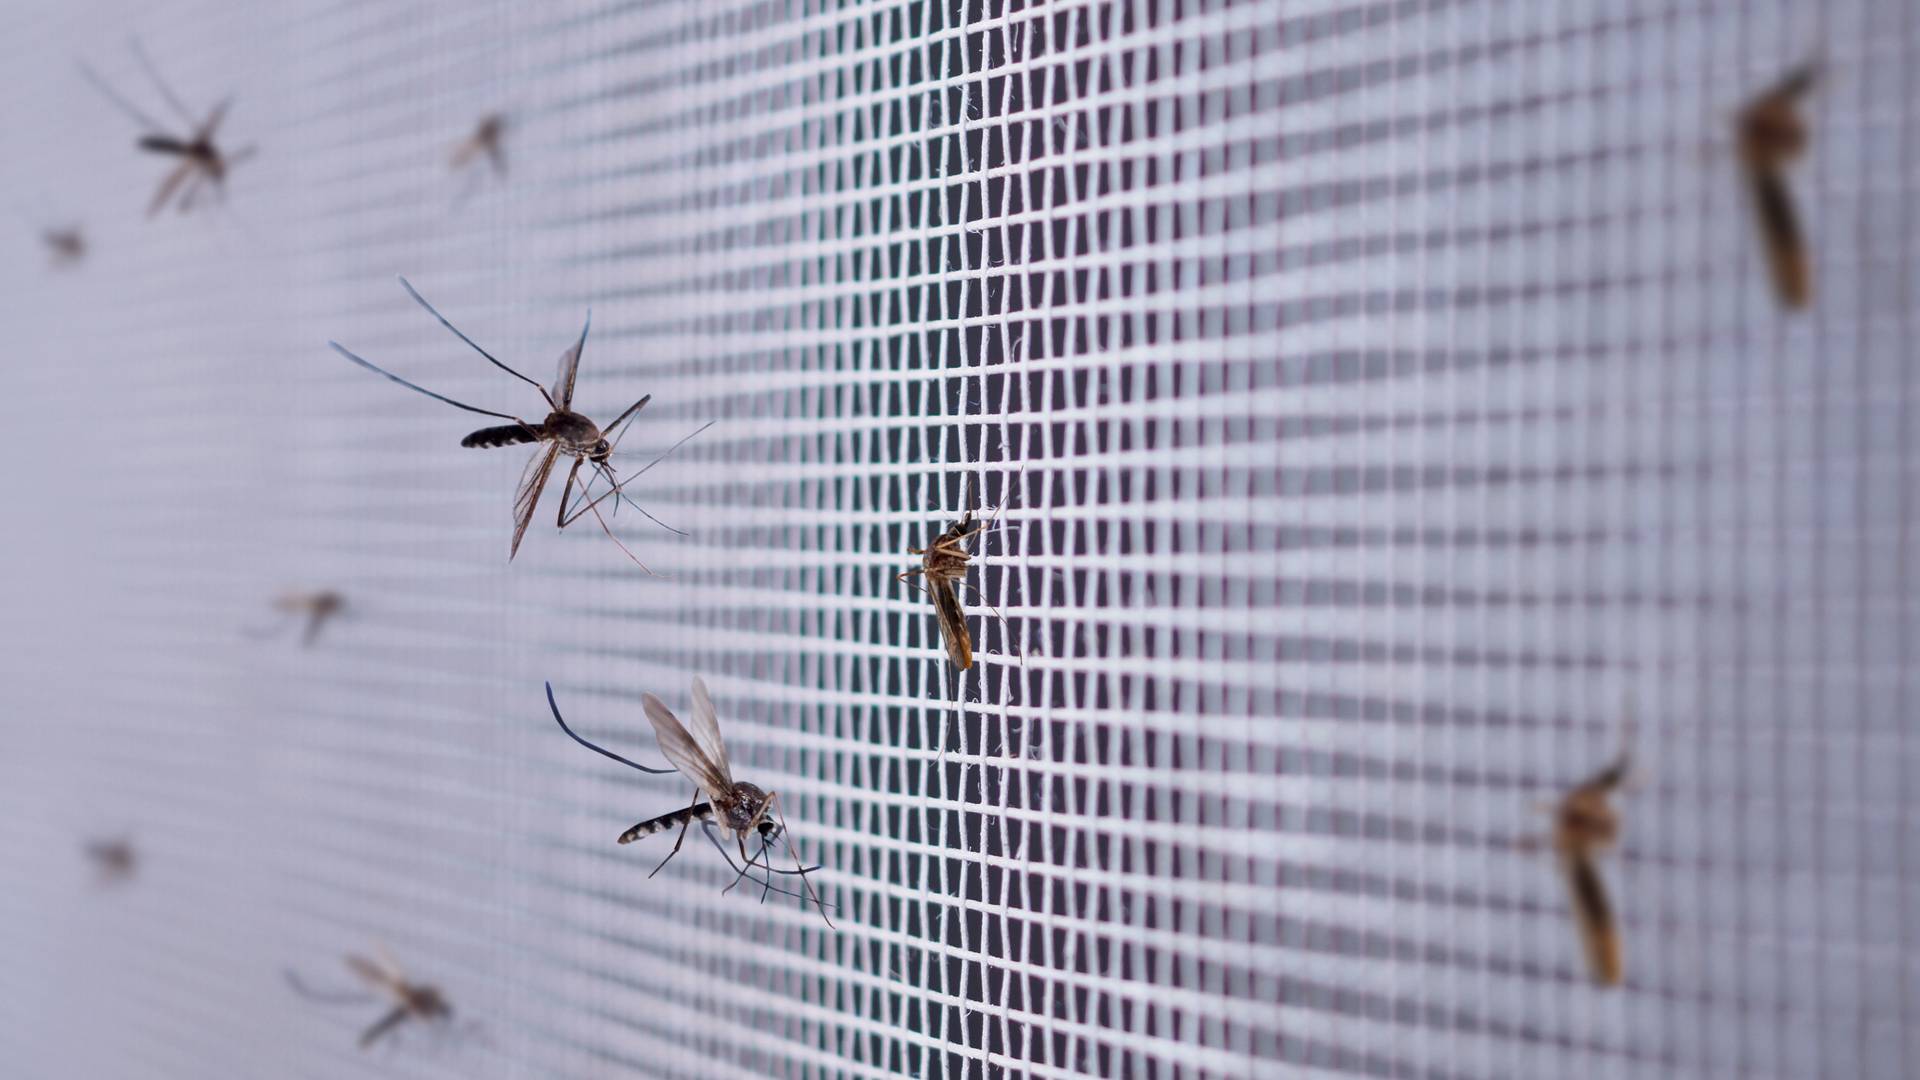 Moskitiera okienna — ochroni cię przed komarami i pająkami w domu